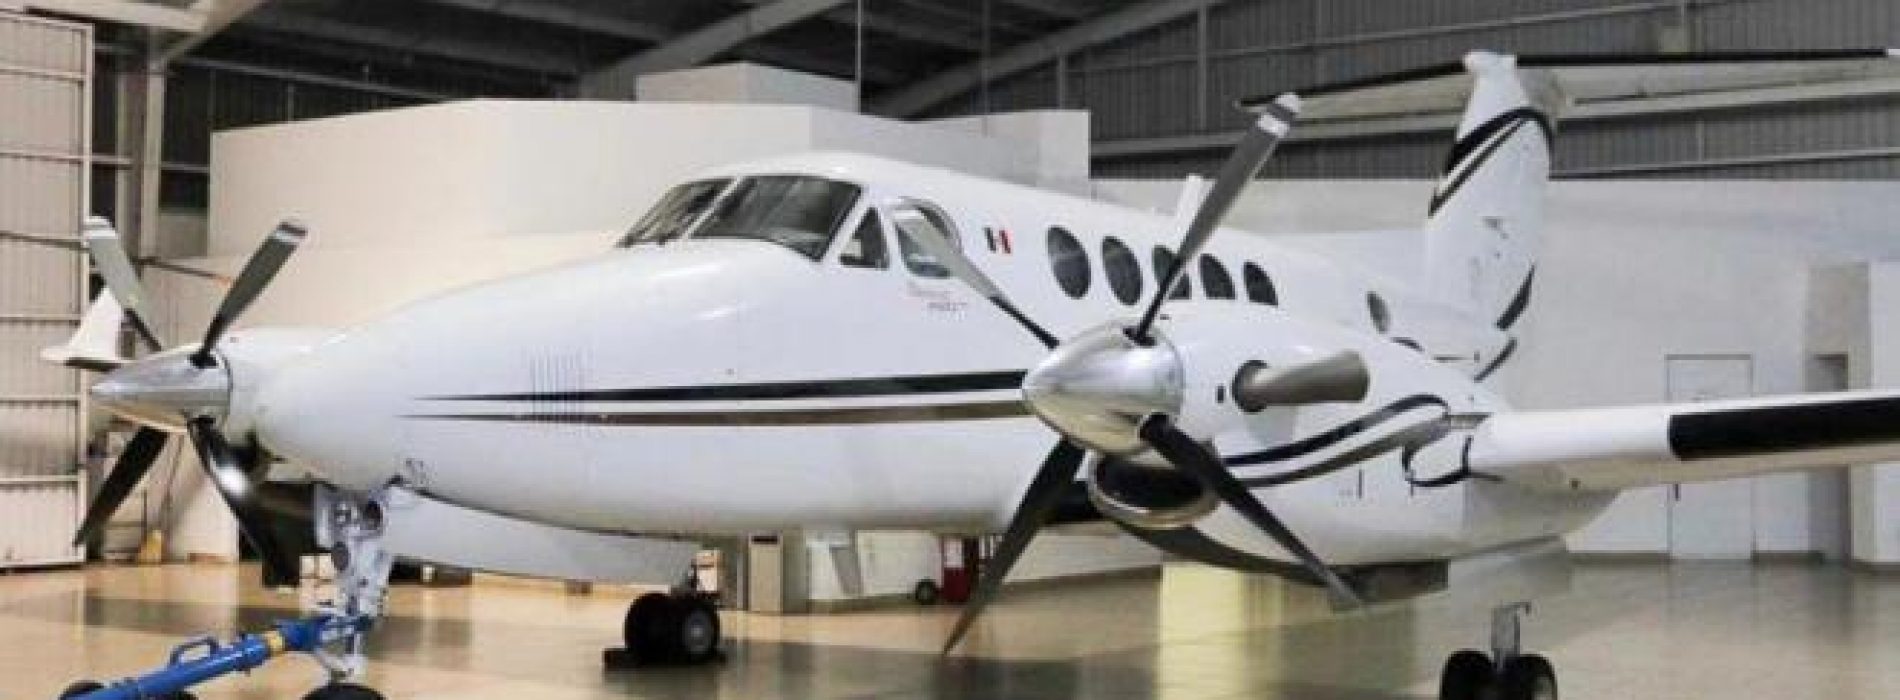 Gobierno de Oaxaca podría vender avión oficial